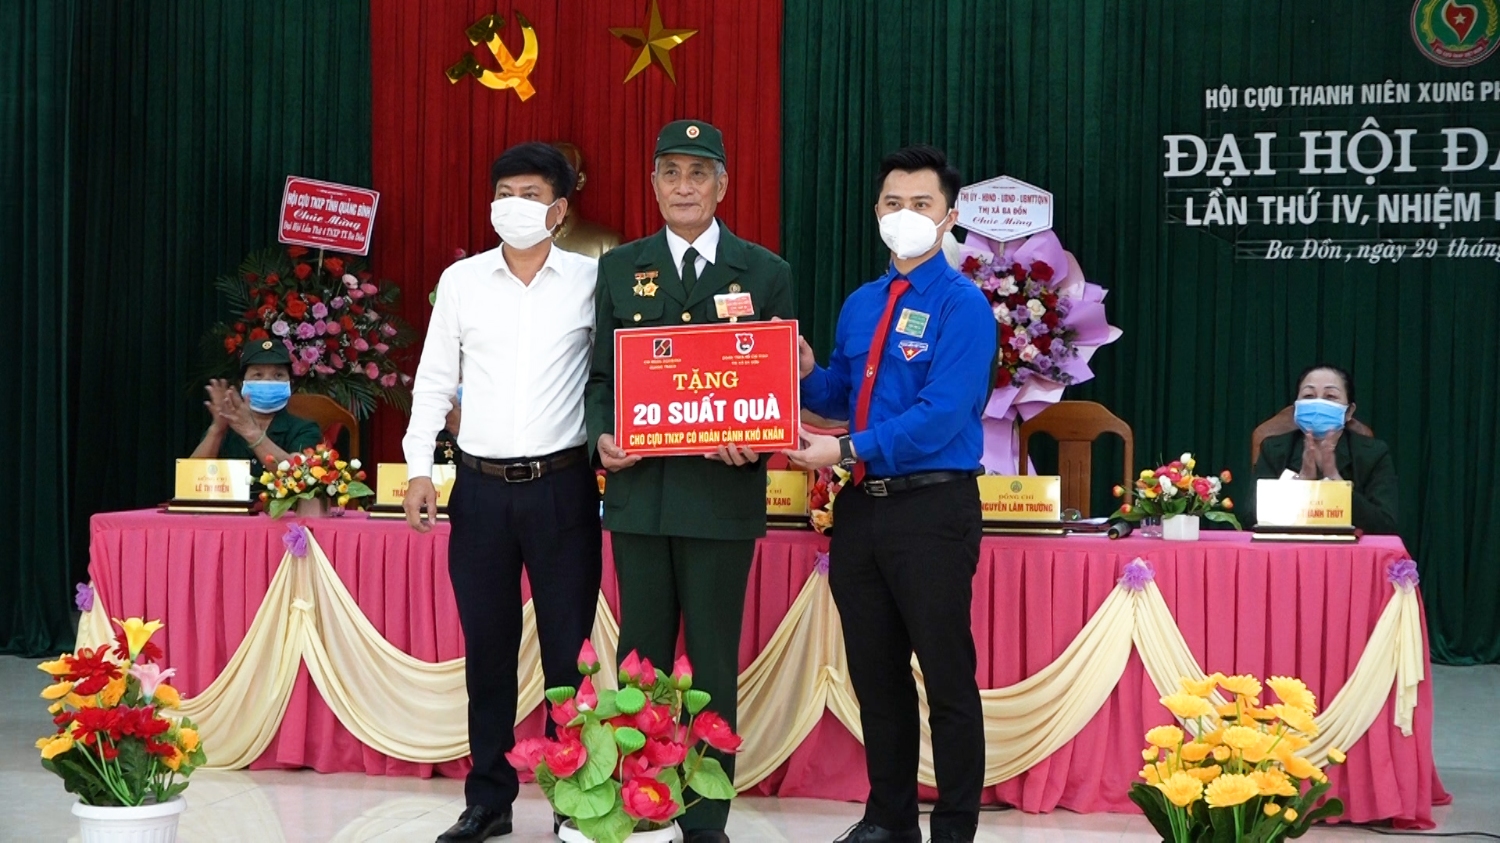 Ngân hàng Nông nghiệp và Phát triển nông thôn chi nhánh Quảng Trạch và Thị đoàn Ba Đồn tặng 20 suất quà cho Cựu TNXP có hoàn cảnh khó khăn